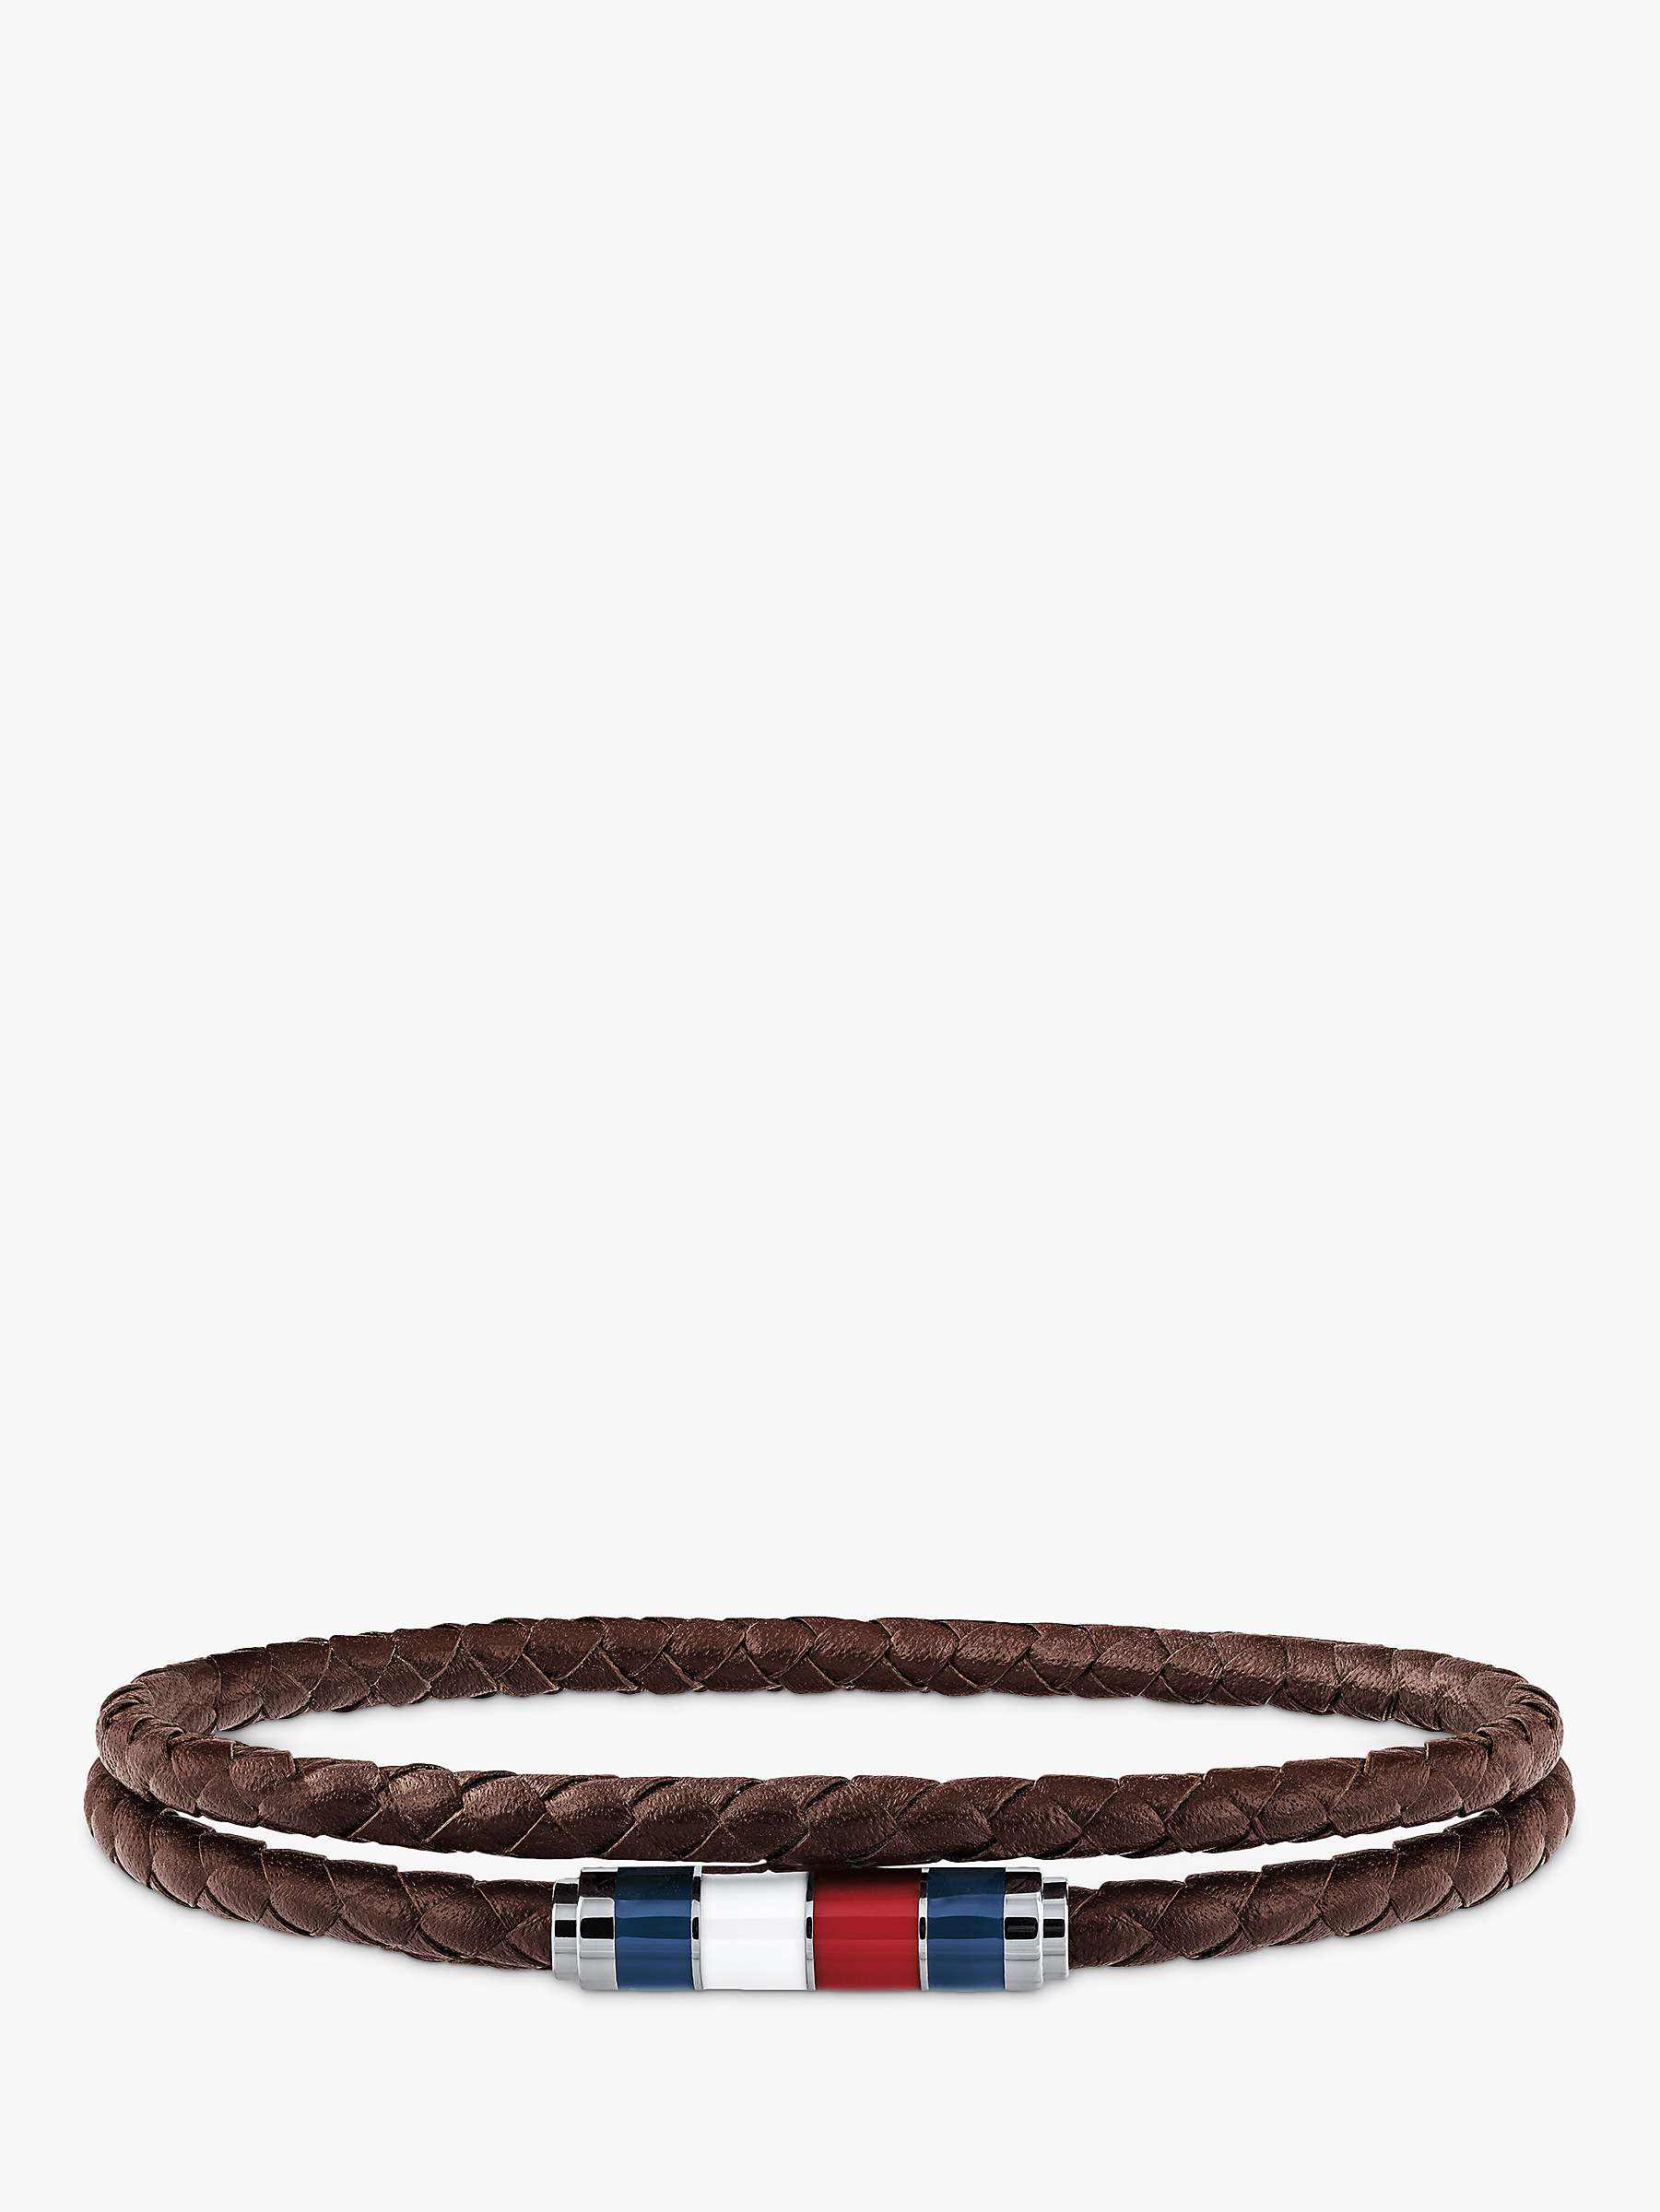 Buy Tommy Hilfiger Men's Double Leather Bracelet Online at johnlewis.com